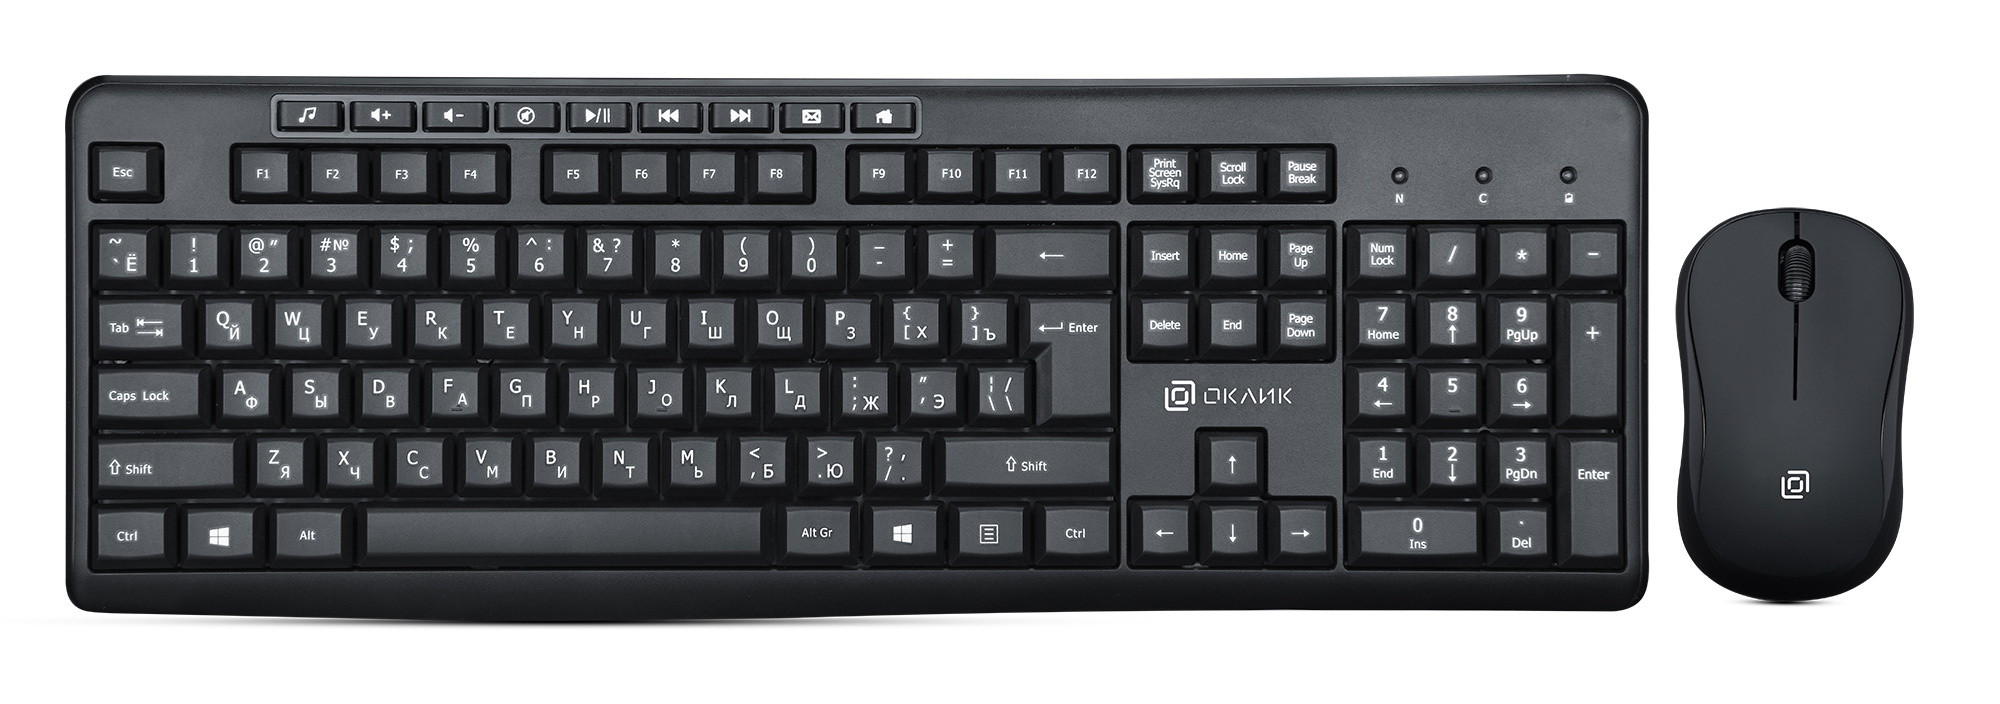 Клавиатура+мышь Oklick 225M клав:черный мышь:черный USB беспроводная